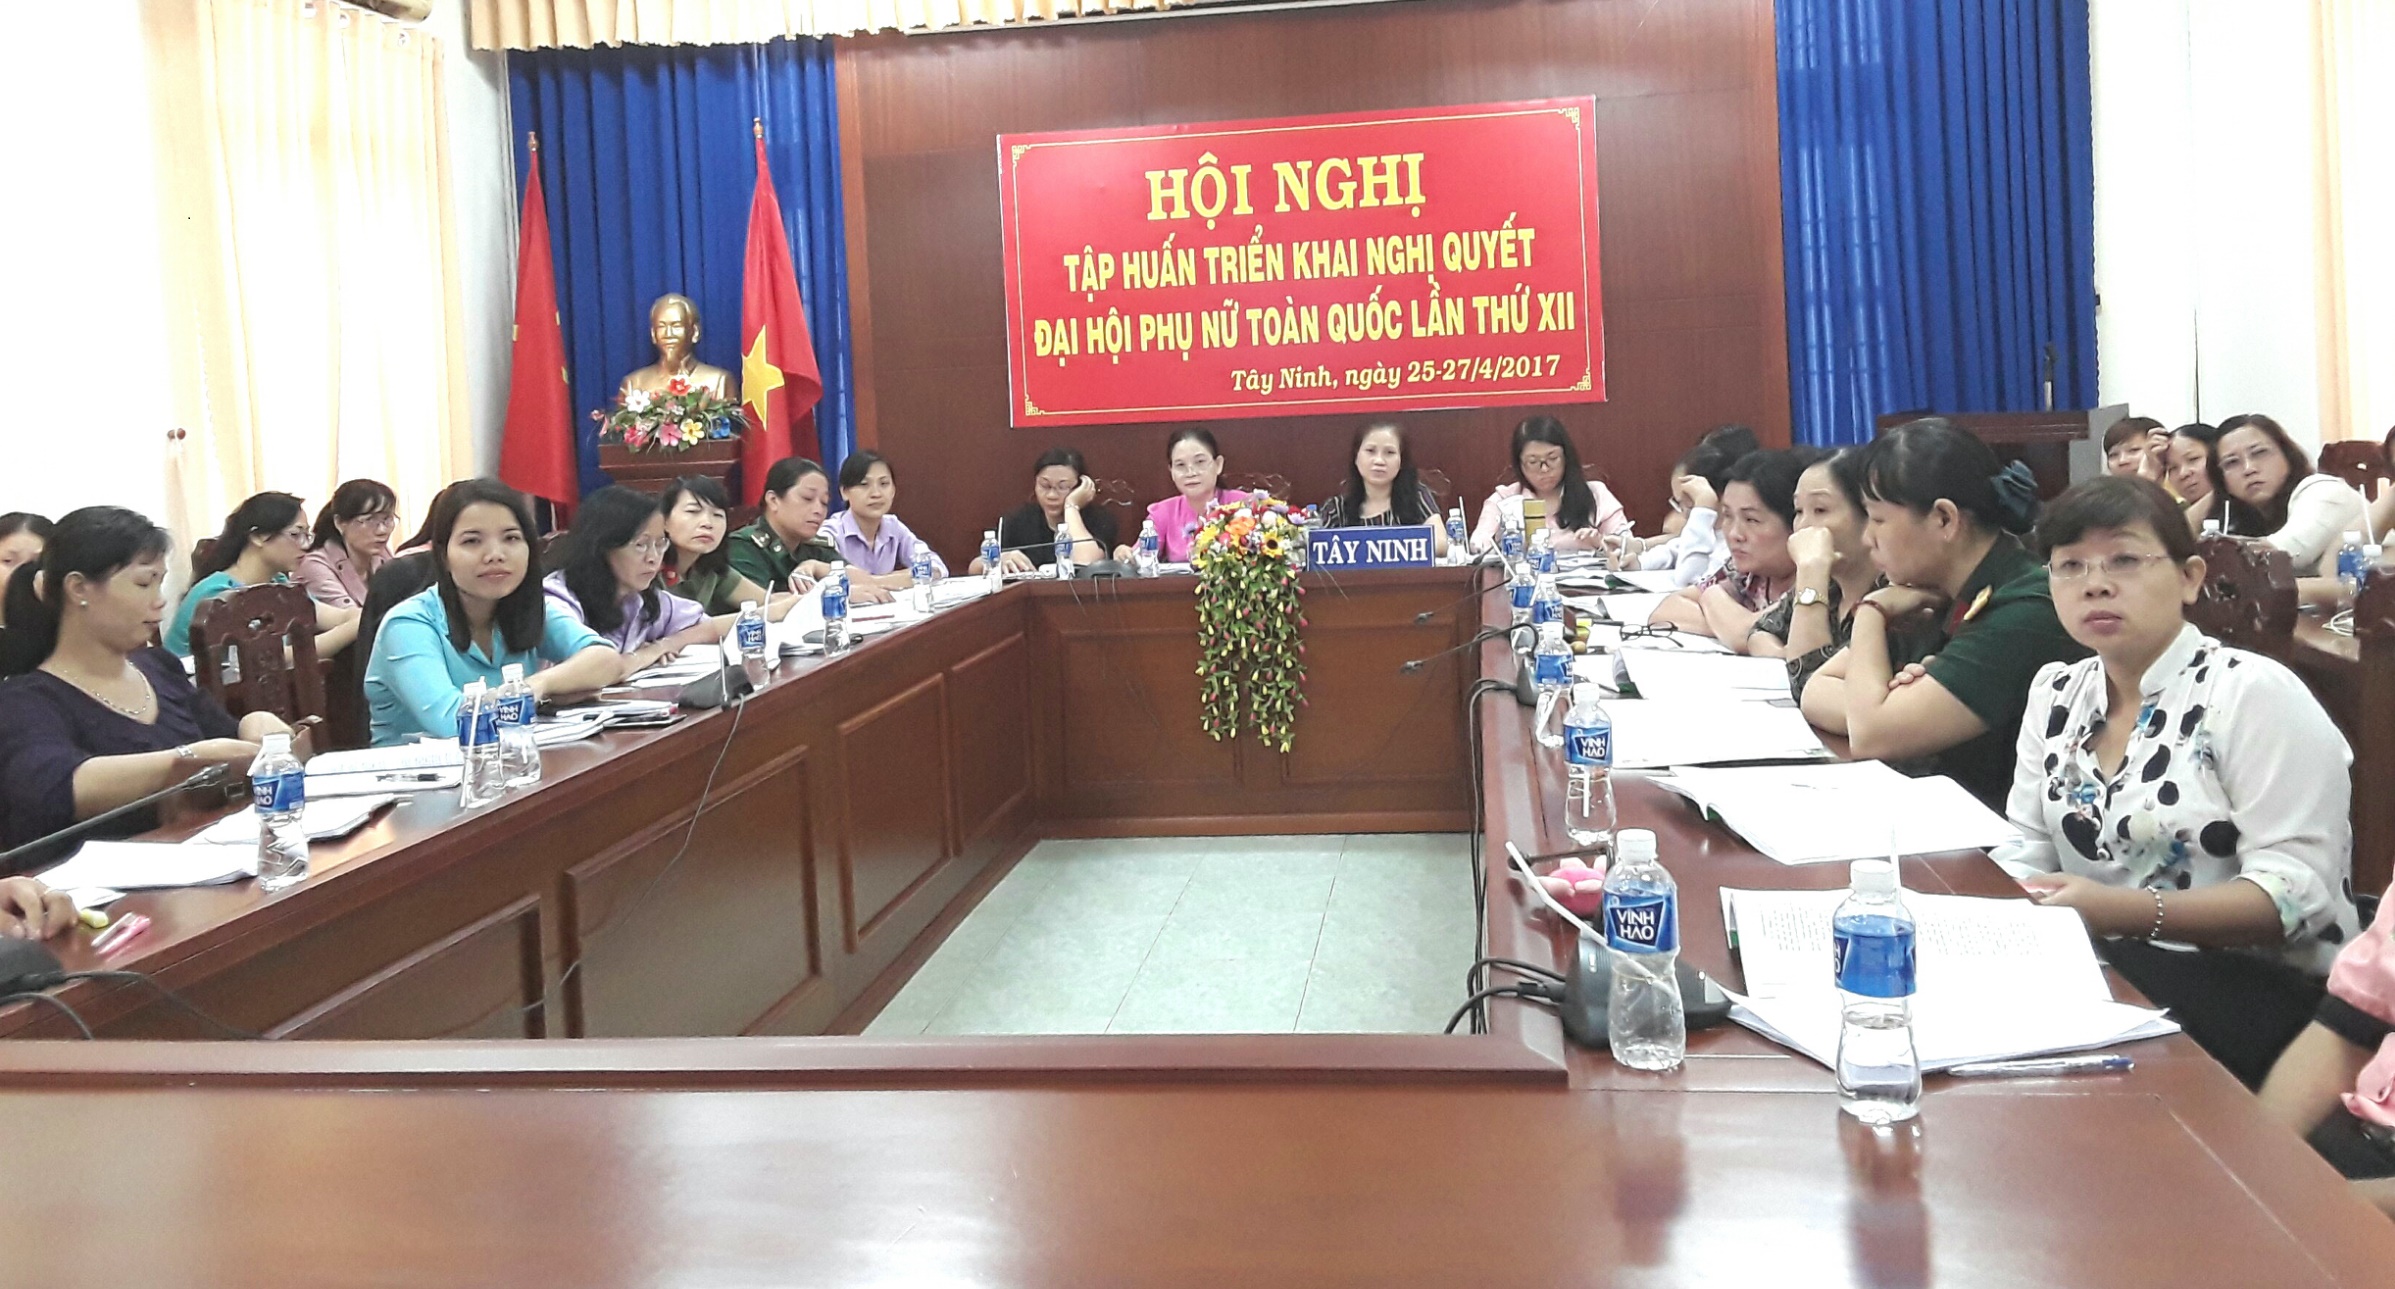 Hội nghị tập huấn triển khai Nghị quyết Đại hội đại biểu Phụ nữ toàn quốc lần thứ XII tại Hội LHPN tỉnh Tây Ninh